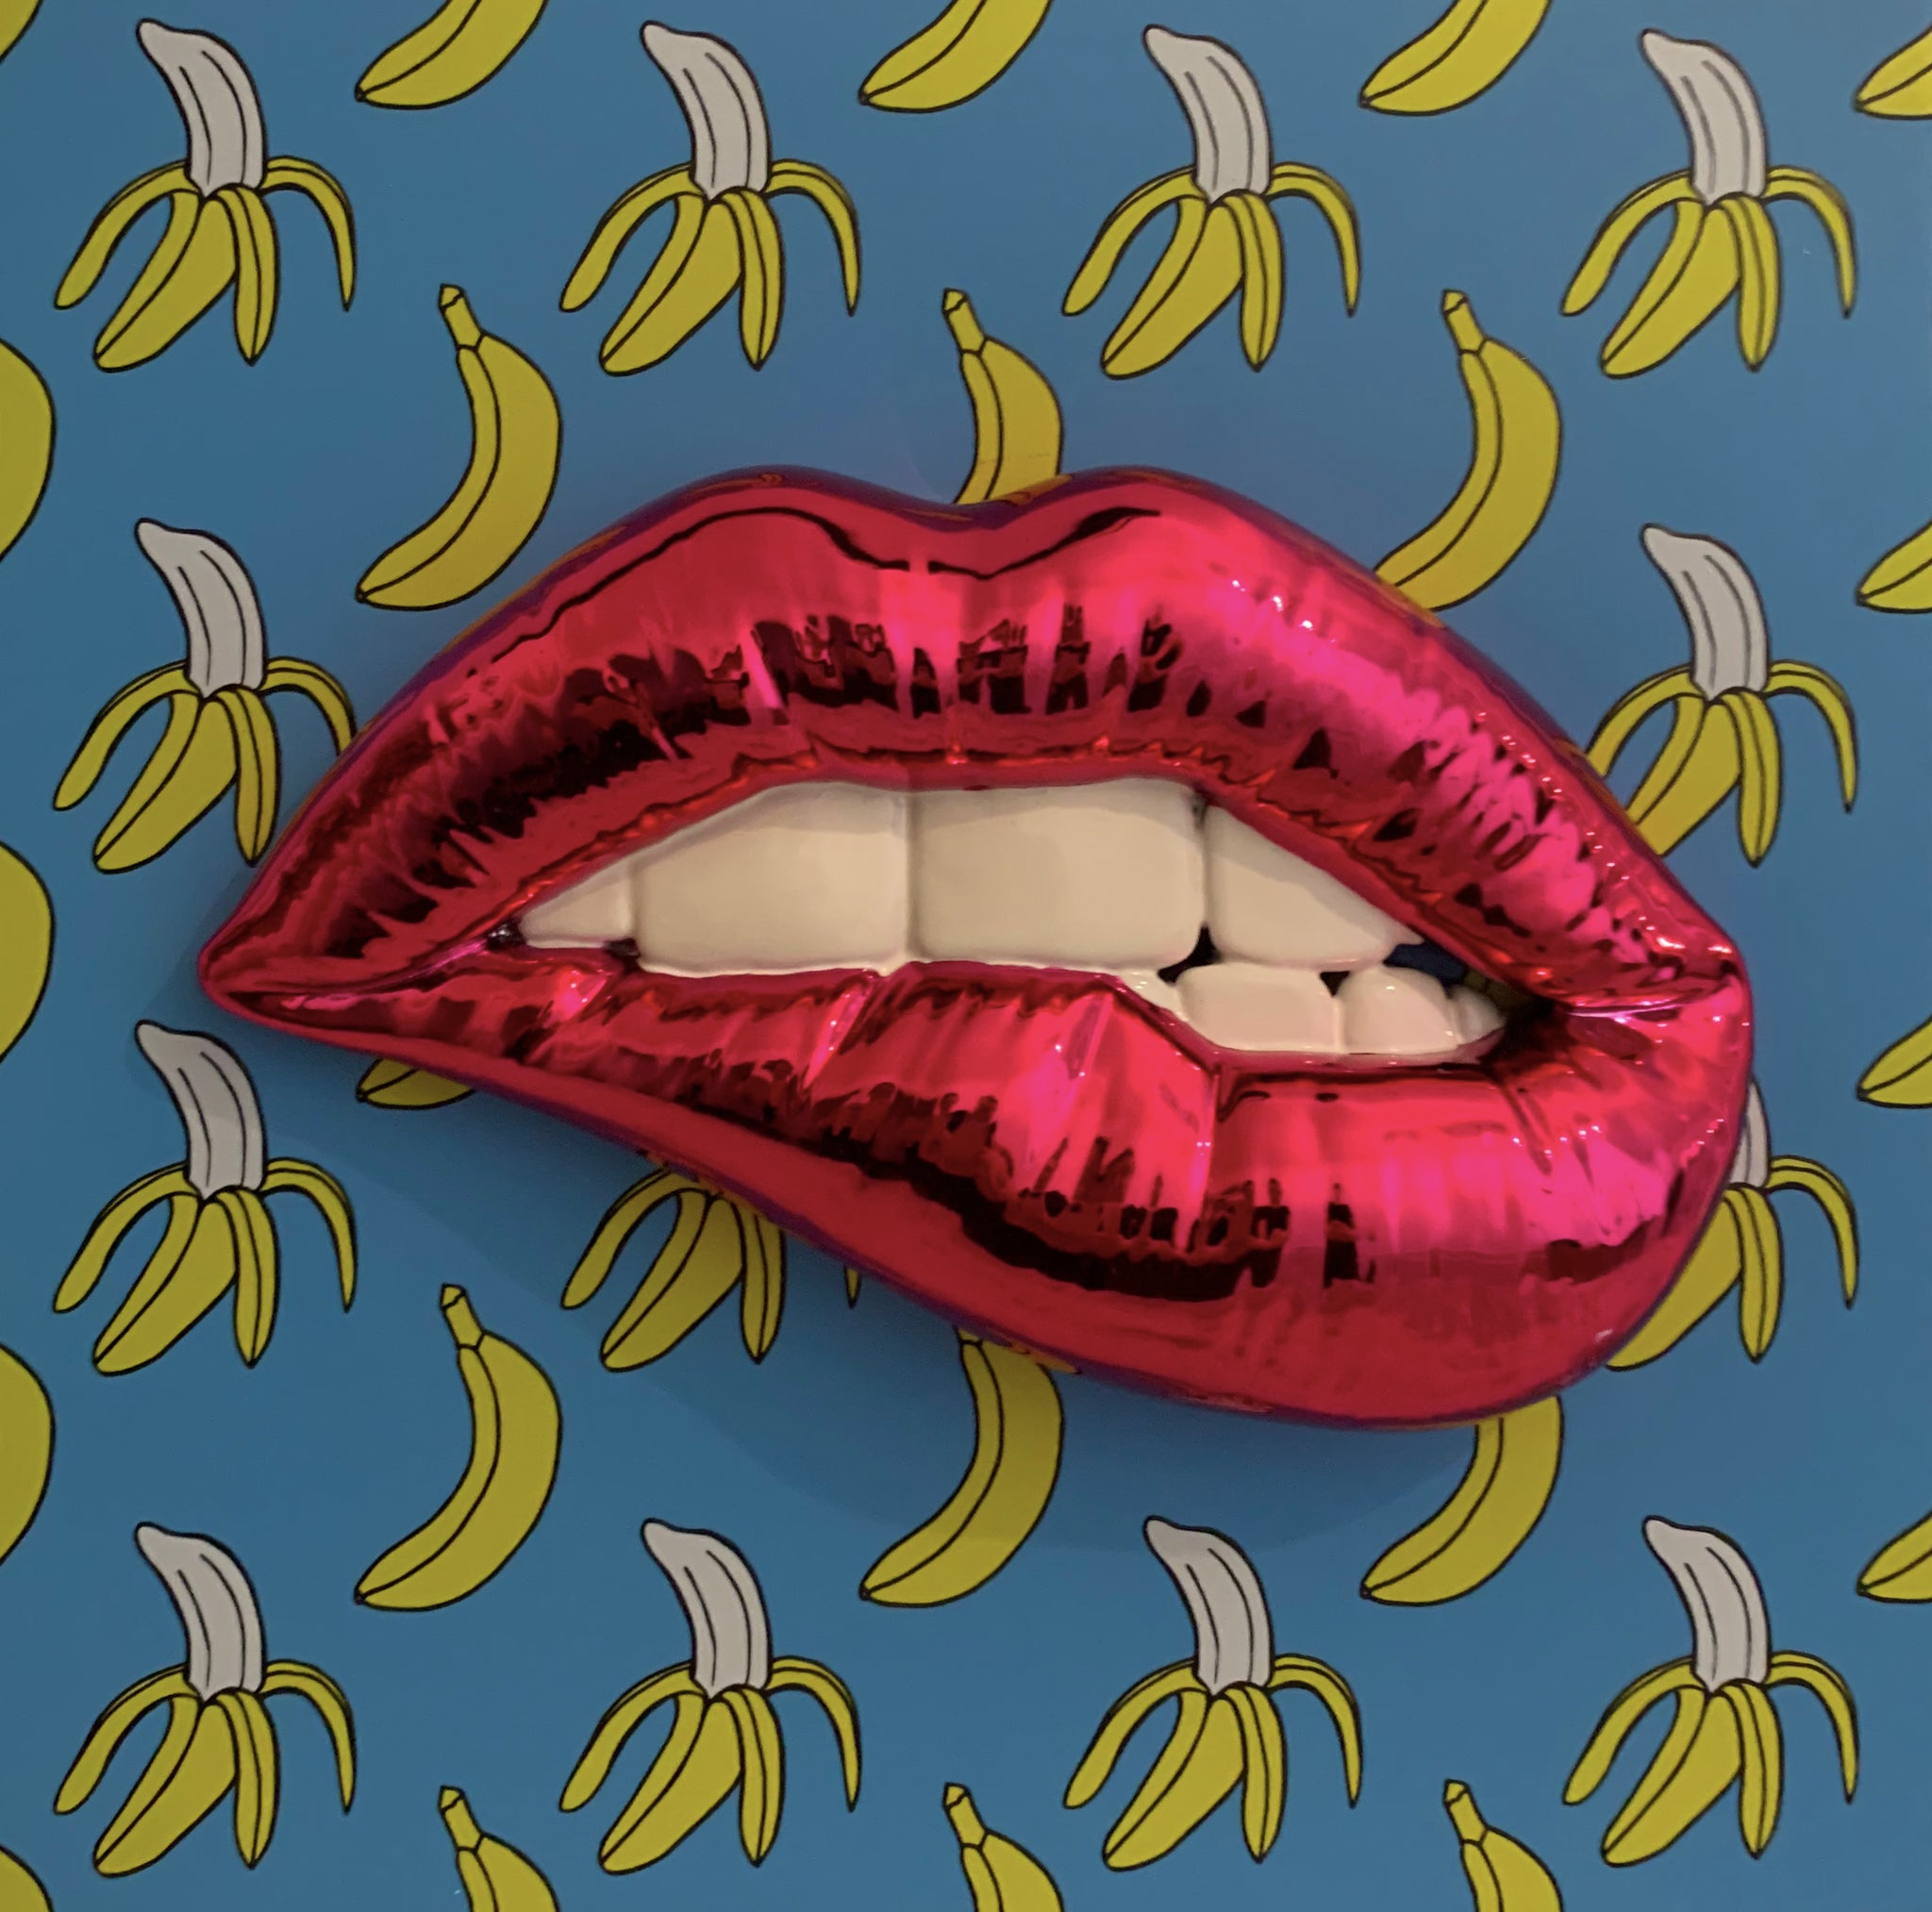 Banana mmmh...